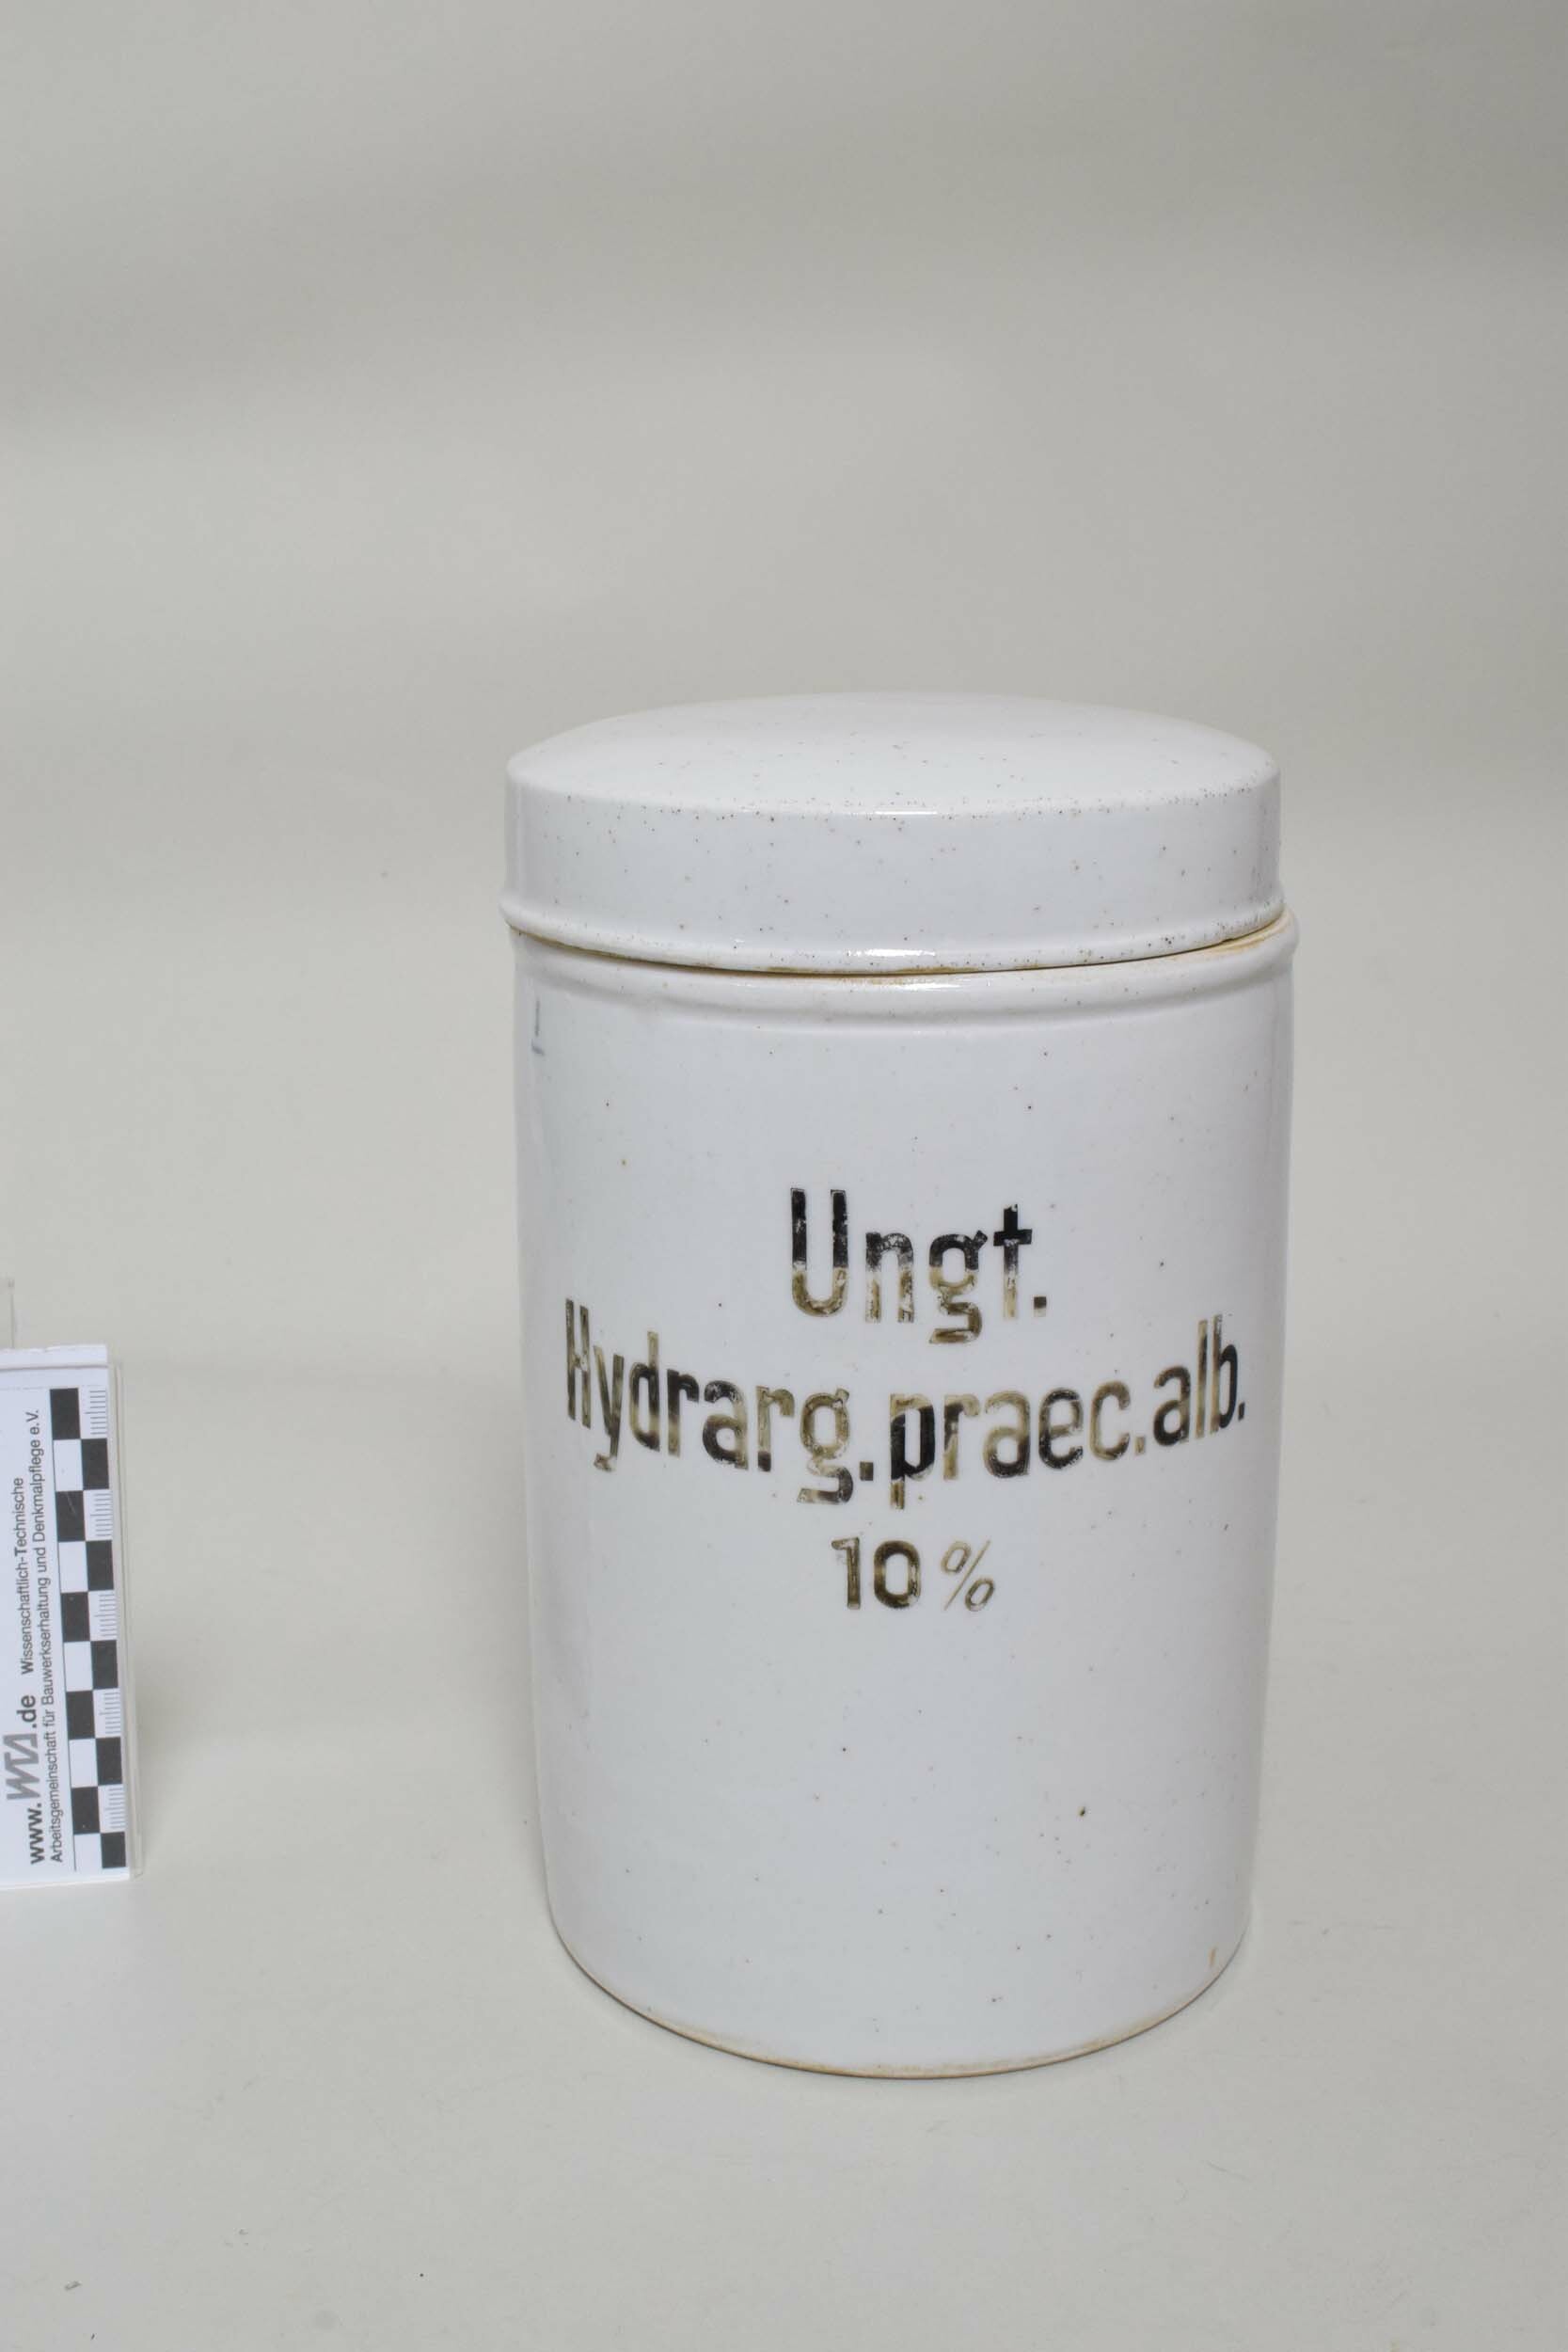 Arzneimitteldose "Ungt. Hydrarg. praec. alb. 10%" (Heimatmuseum Dohna CC BY-NC-SA)